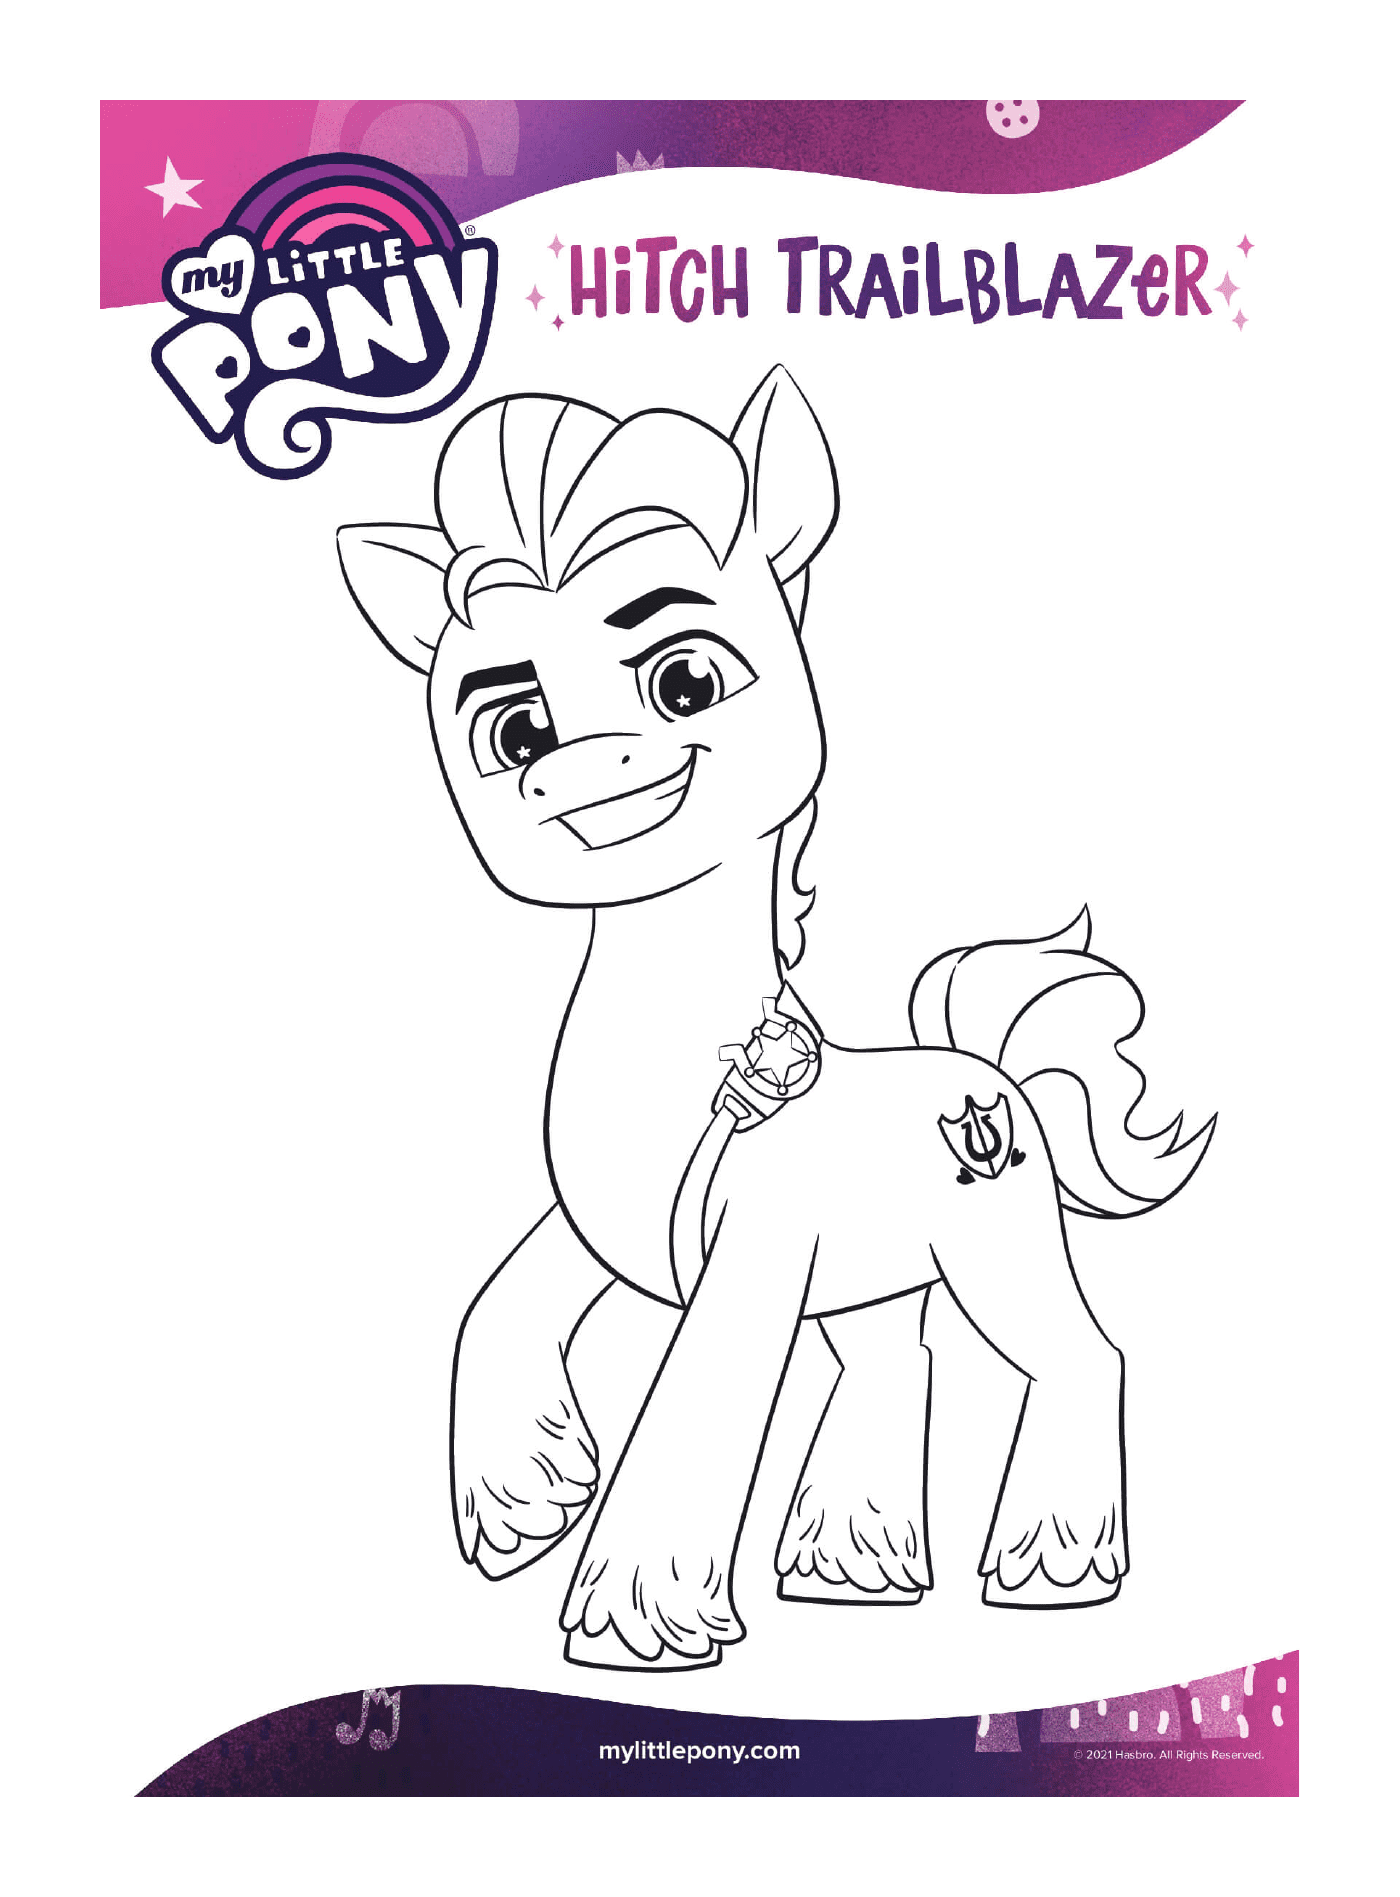   Hitch Trailblazer, nouvelle génération de poney 